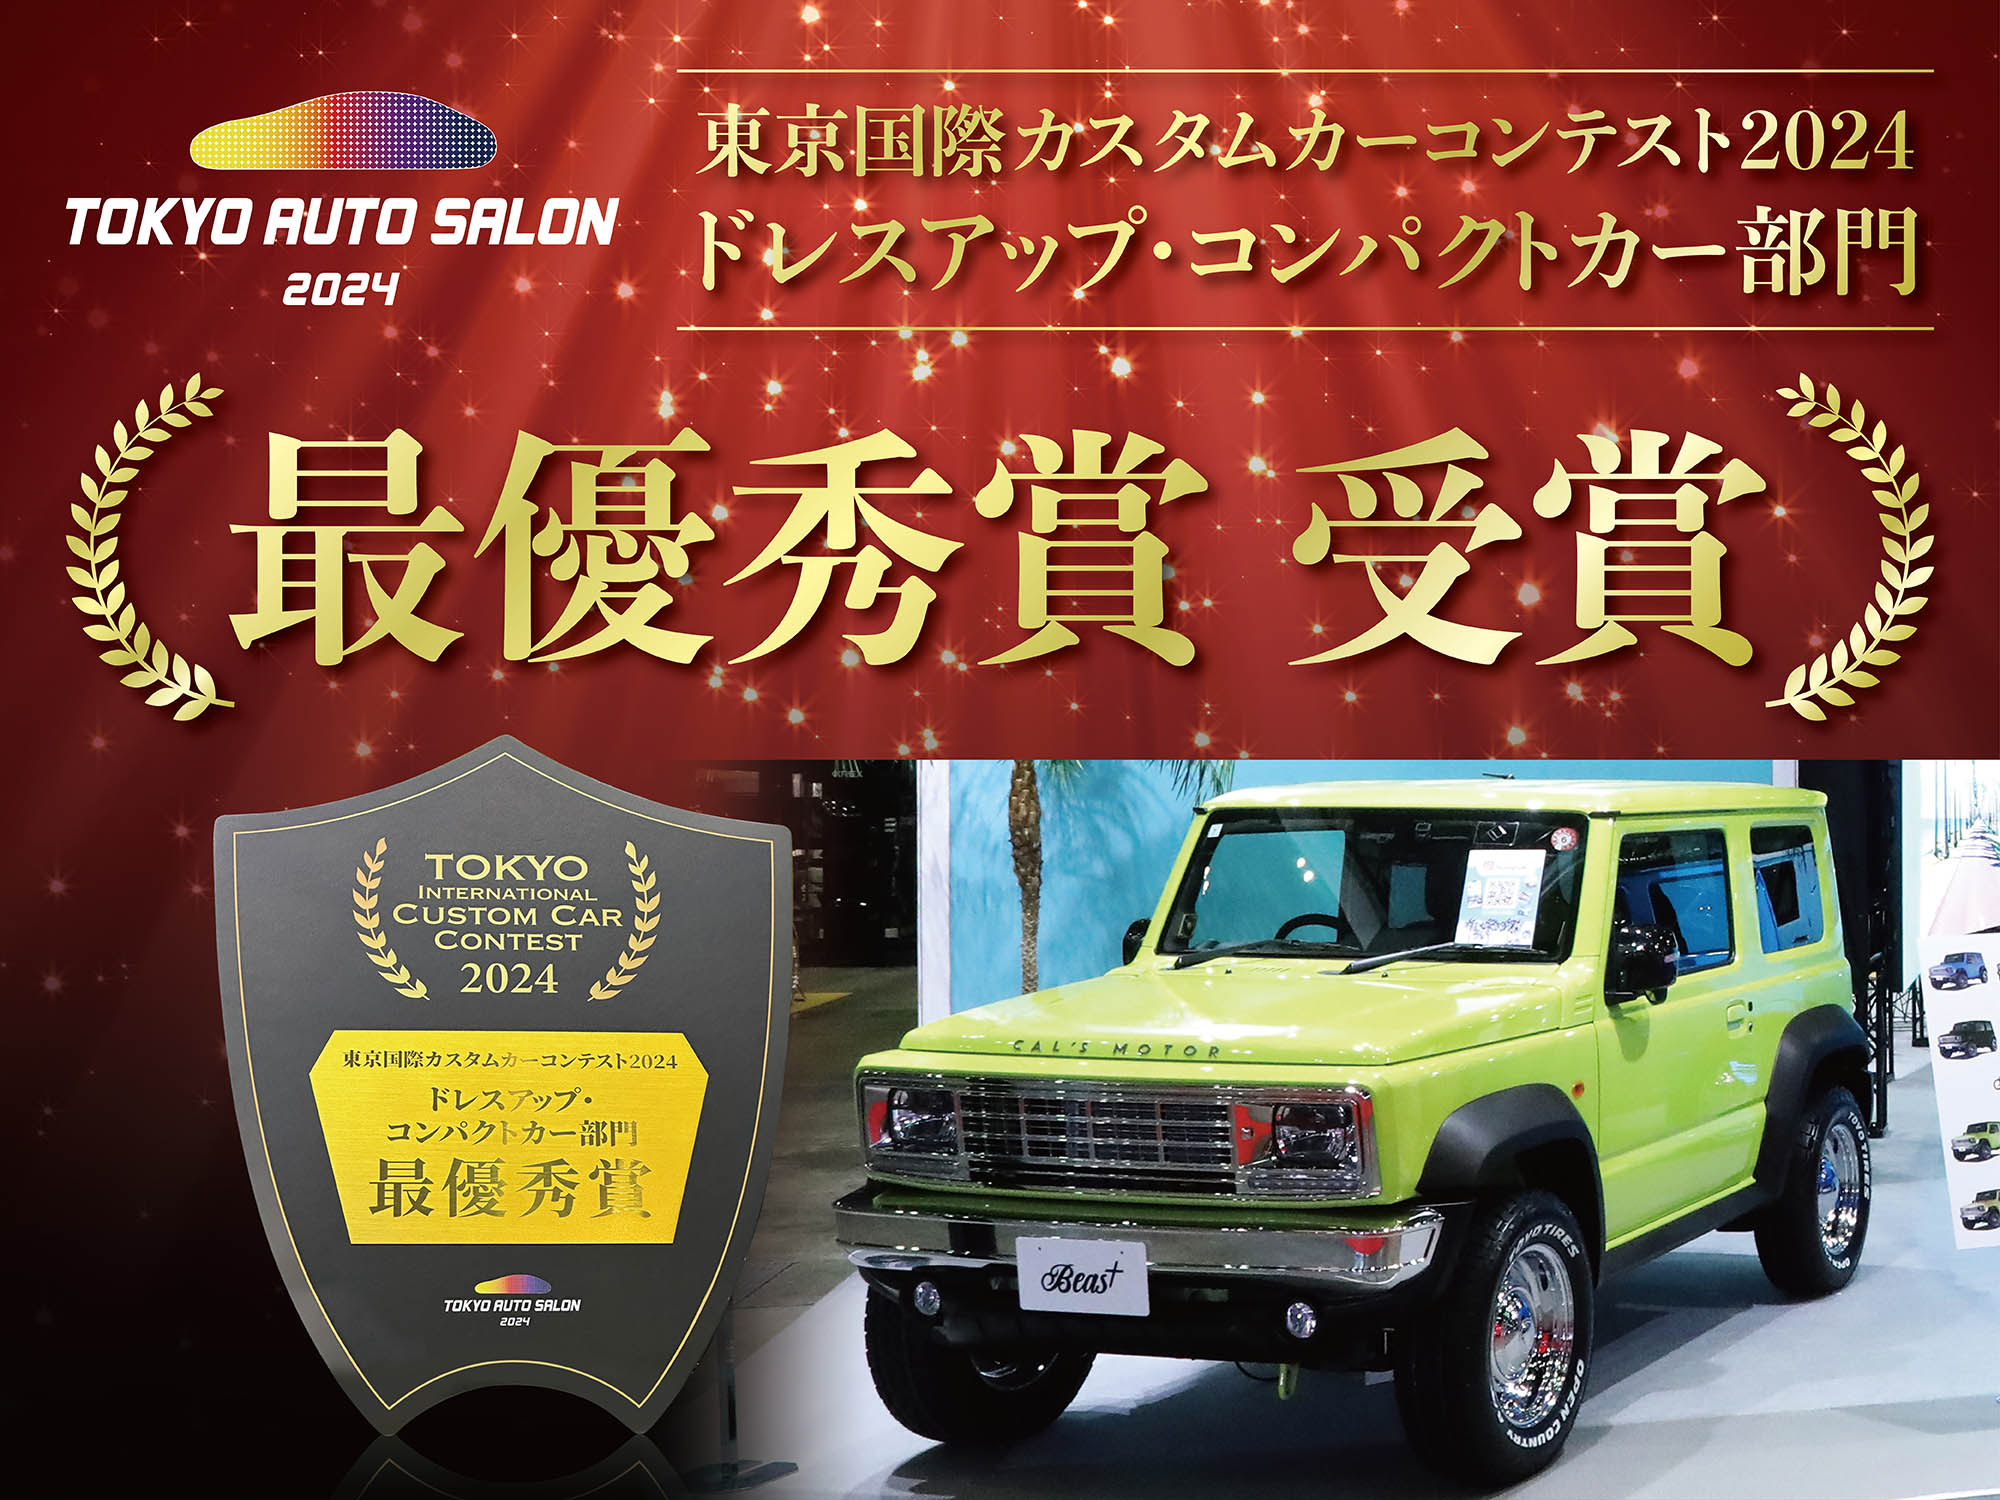 東京オートサロン2024東京国際カスタムカーコンテスト[ドレスアップ・コンパクトカー部門]でBeas+が最優秀賞を受賞しました。>